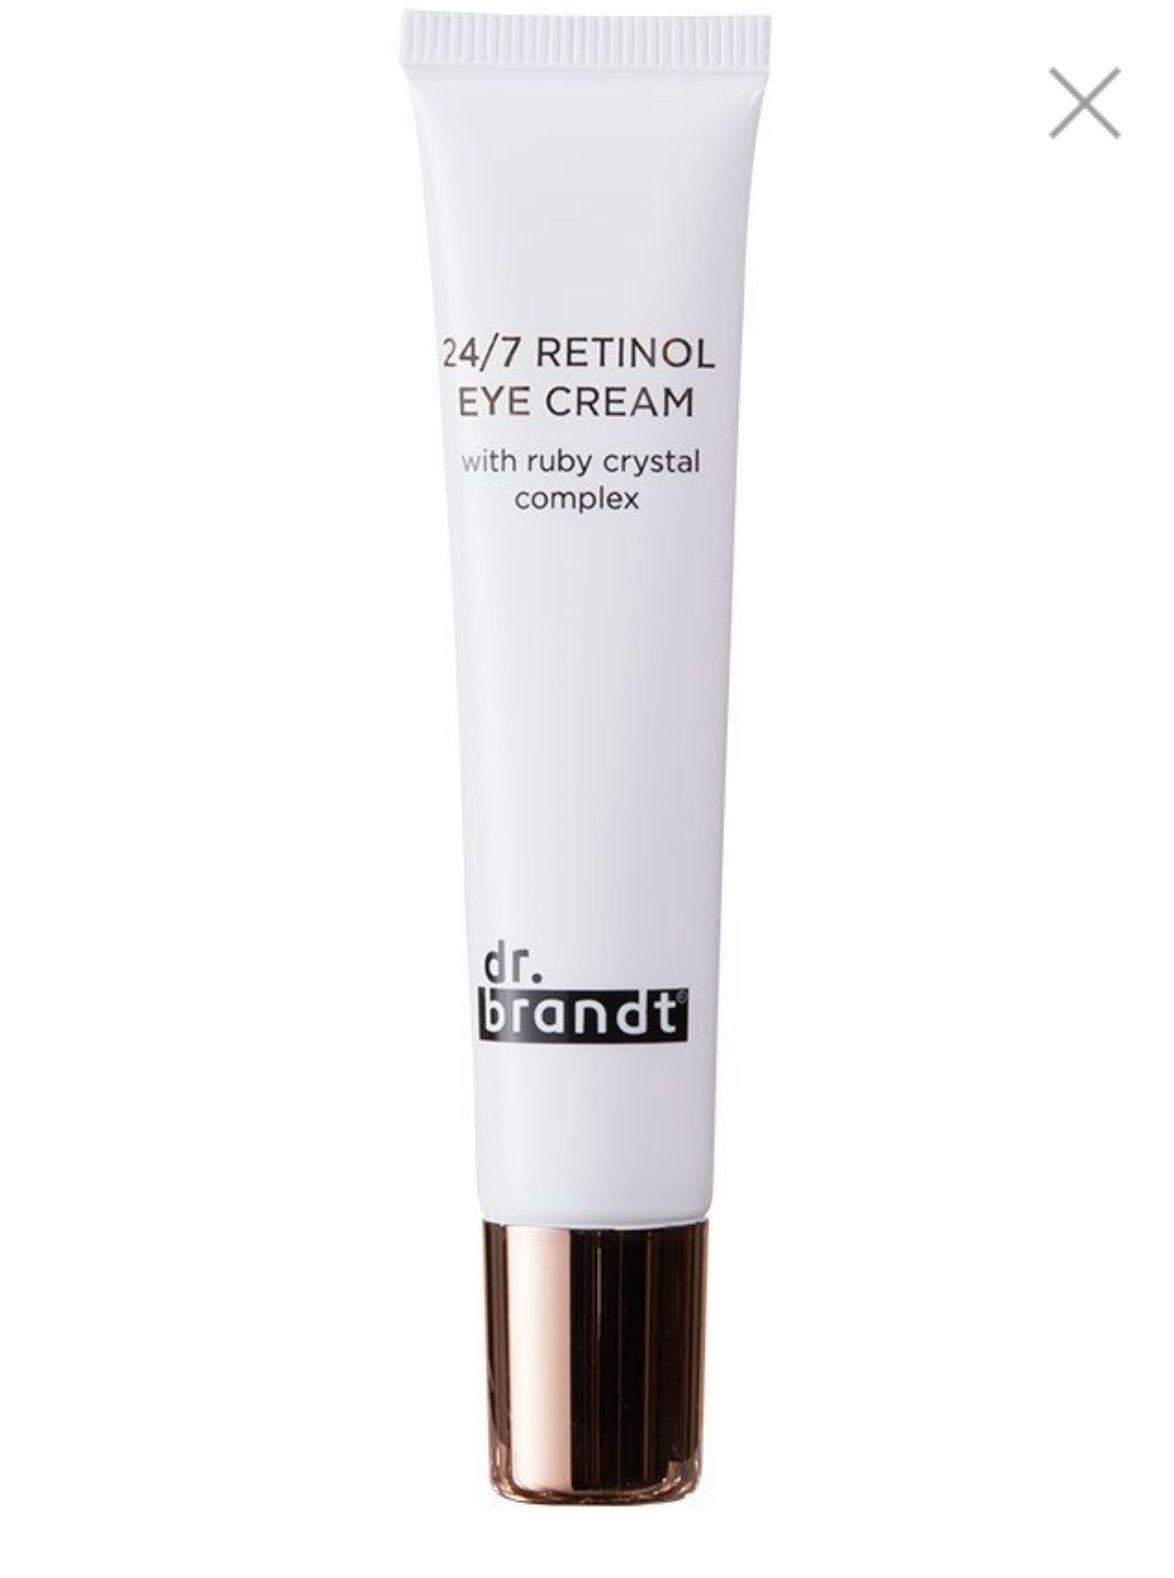 Dr. brandt 24/7 Retinol Eye Cream